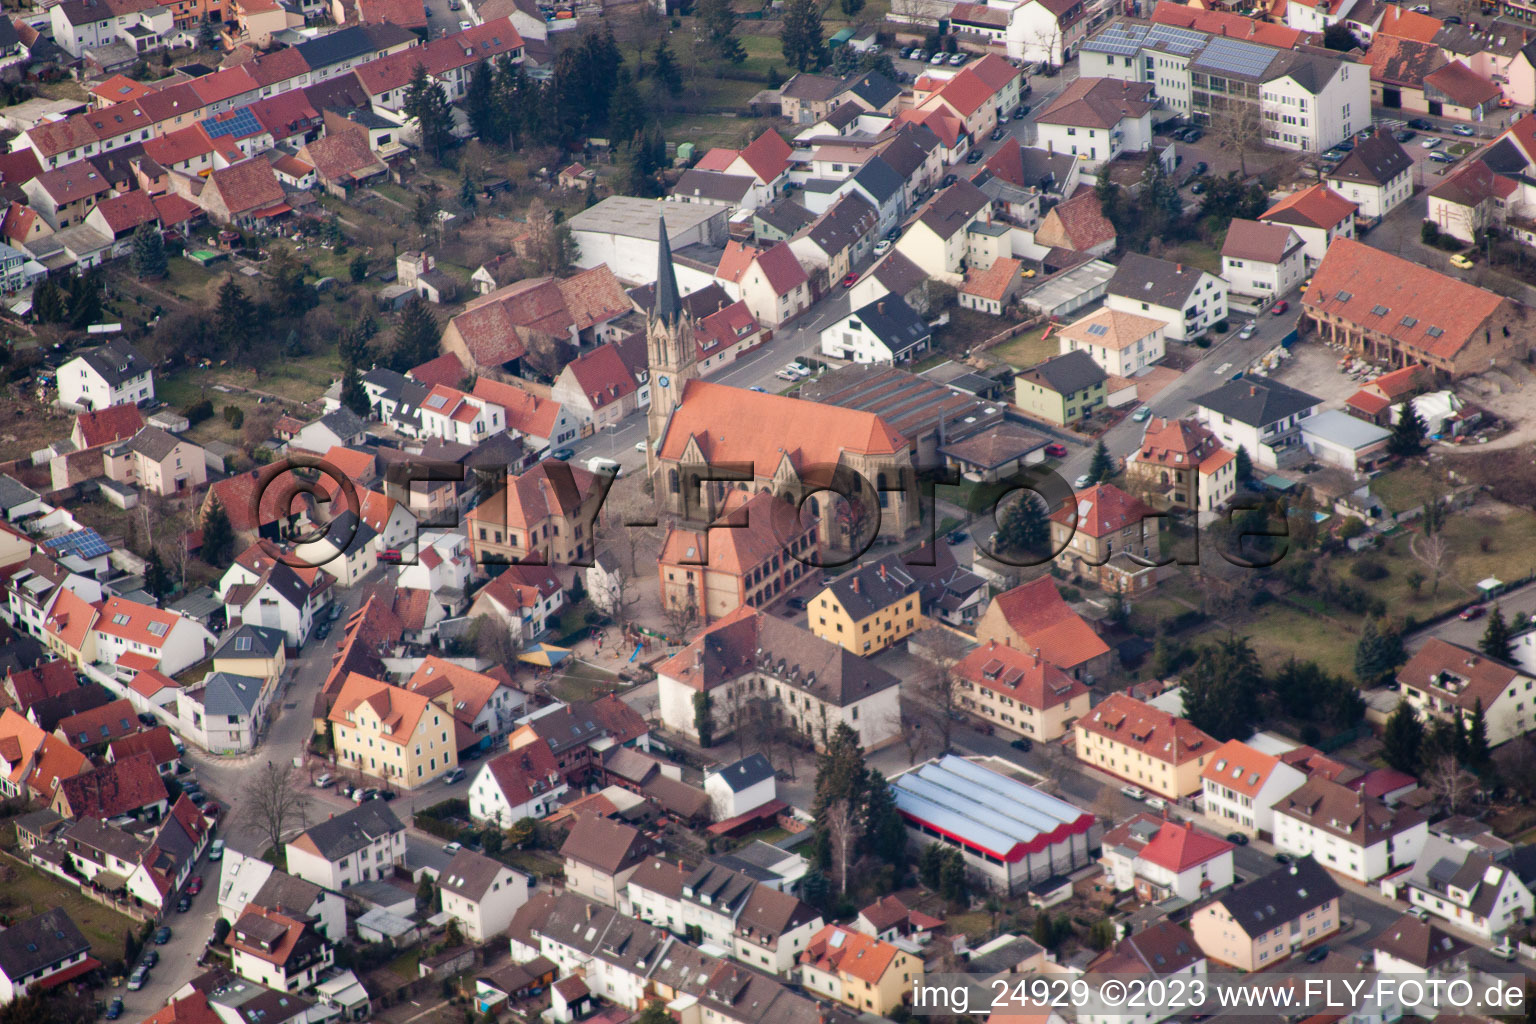 Luftbild von Schutzengelkirche in Brühl im Bundesland Baden-Württemberg, Deutschland